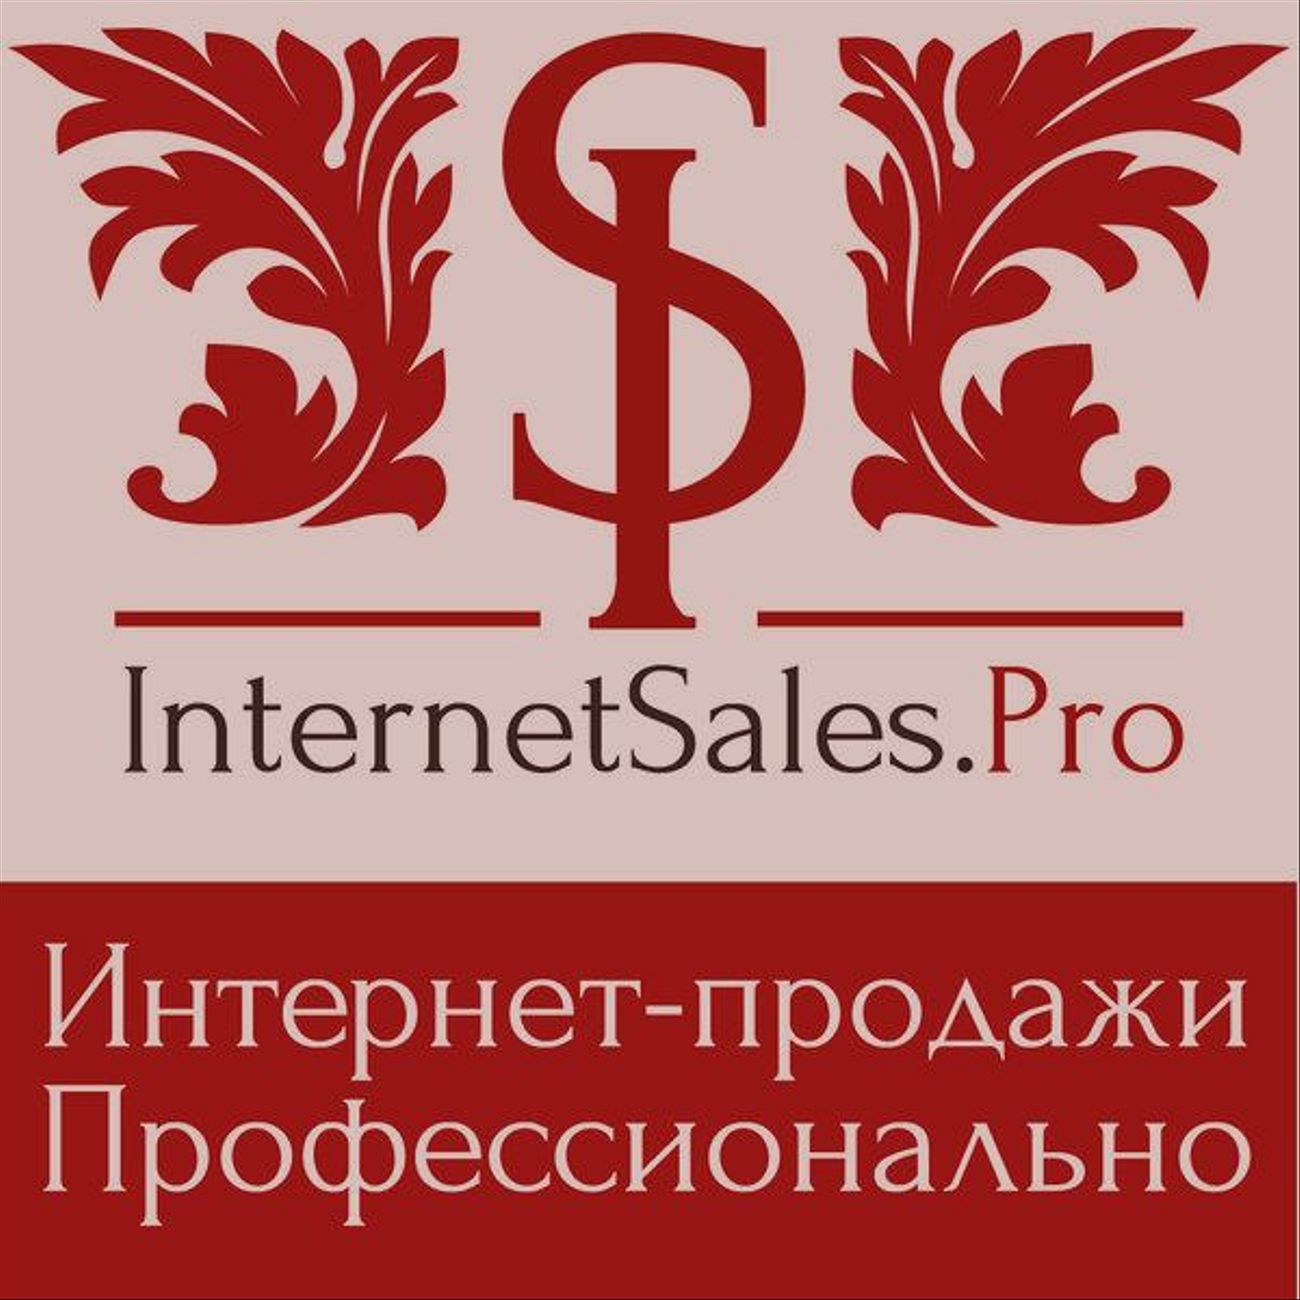 Увеличение интернет-продаж (доп)